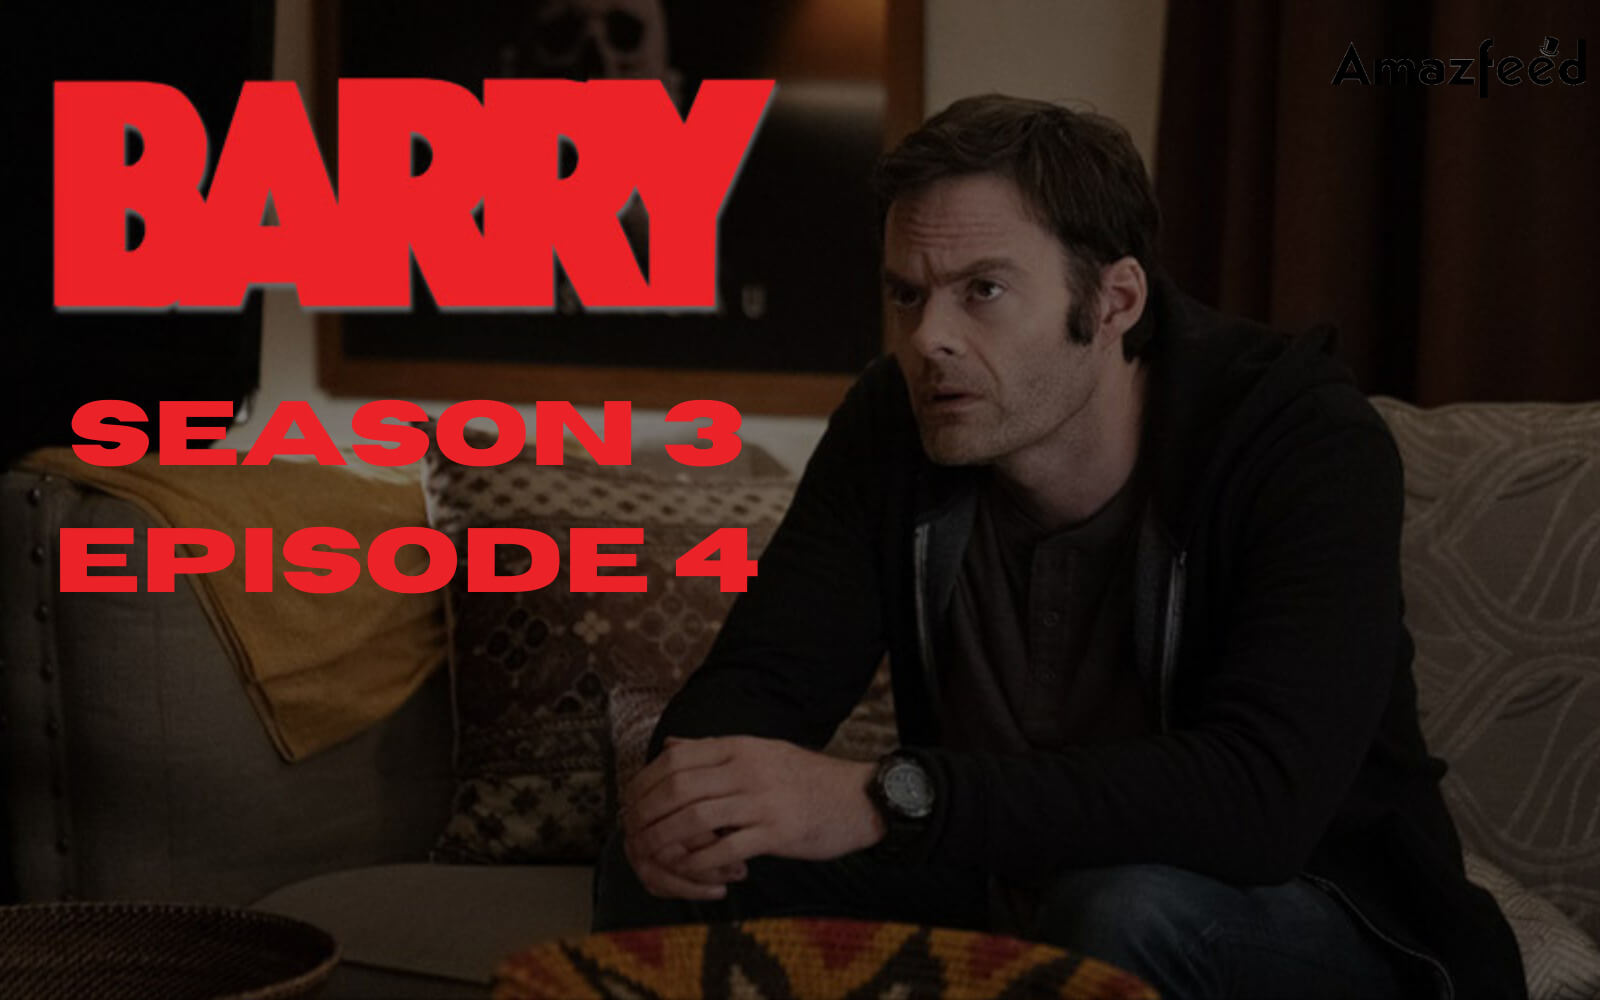 Barry Season 3 Episode 4 release date